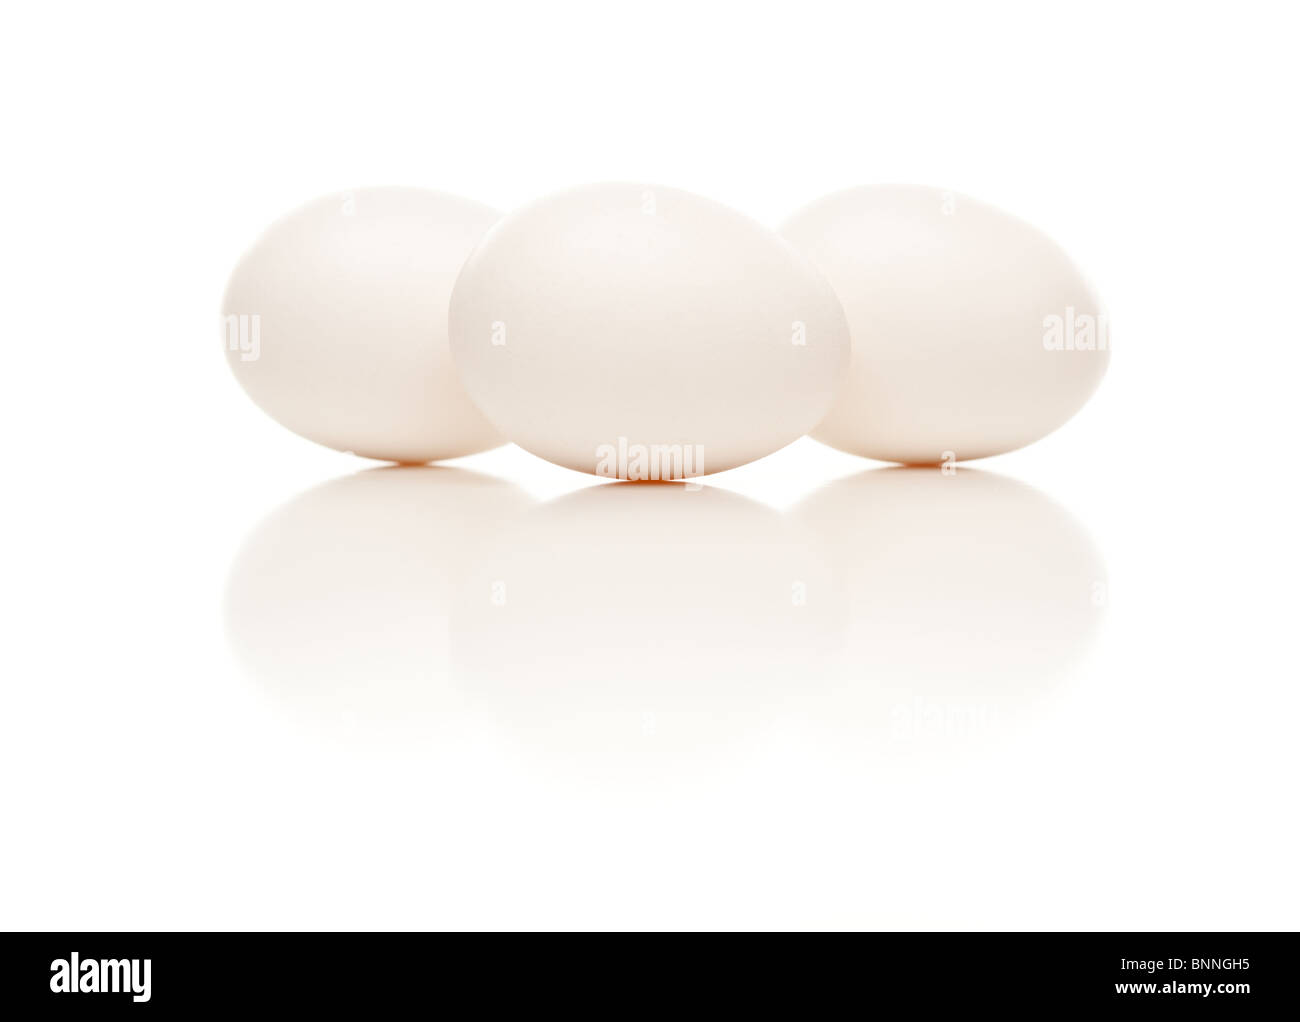 Tres huevos blancos aislados en un fondo blanco reflectante. Foto de stock